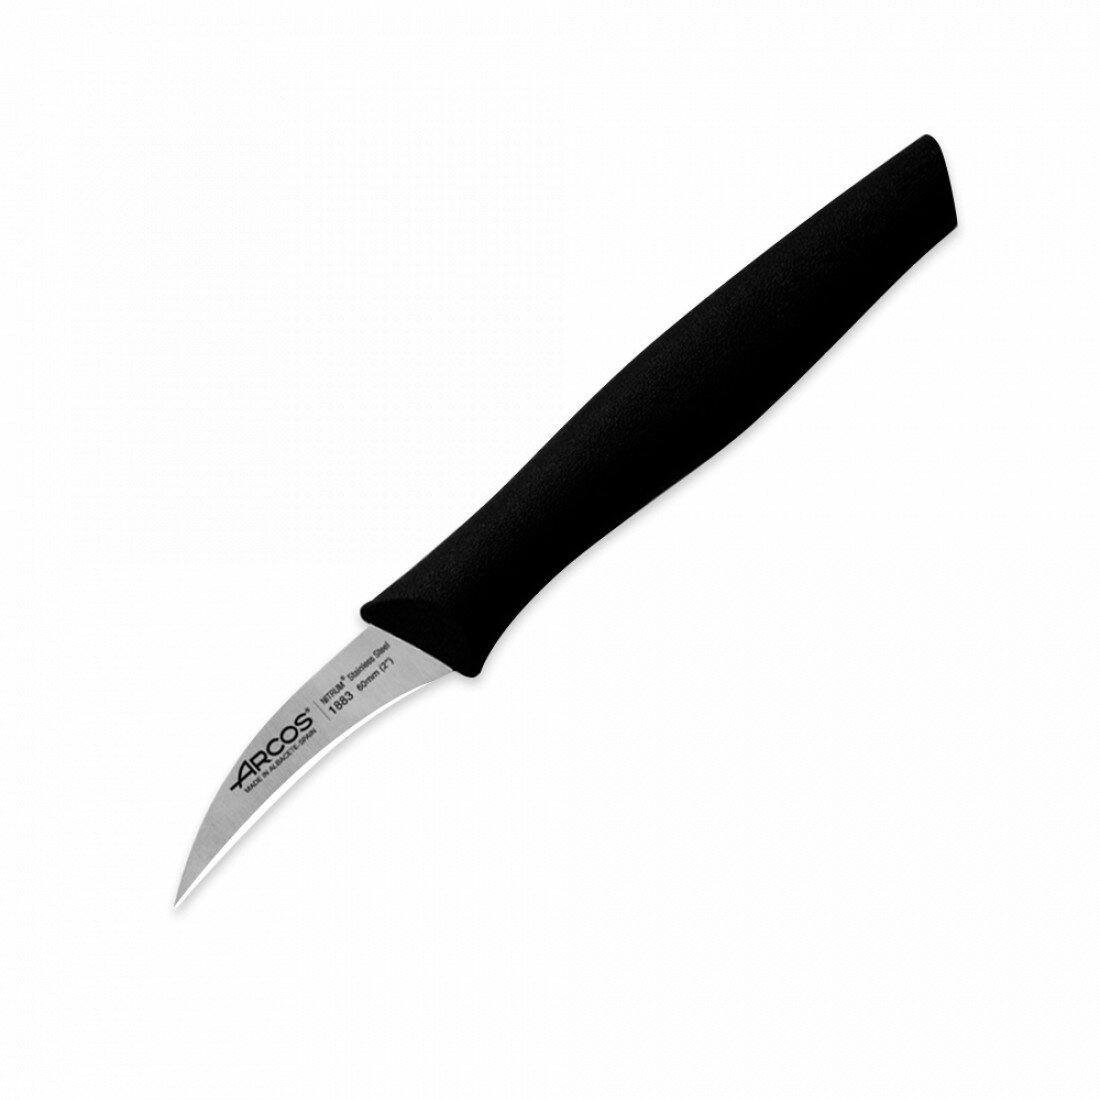 Нож кухонный для чистки 6 см, рукоять черная, серия Nova, 188301, ARCOS